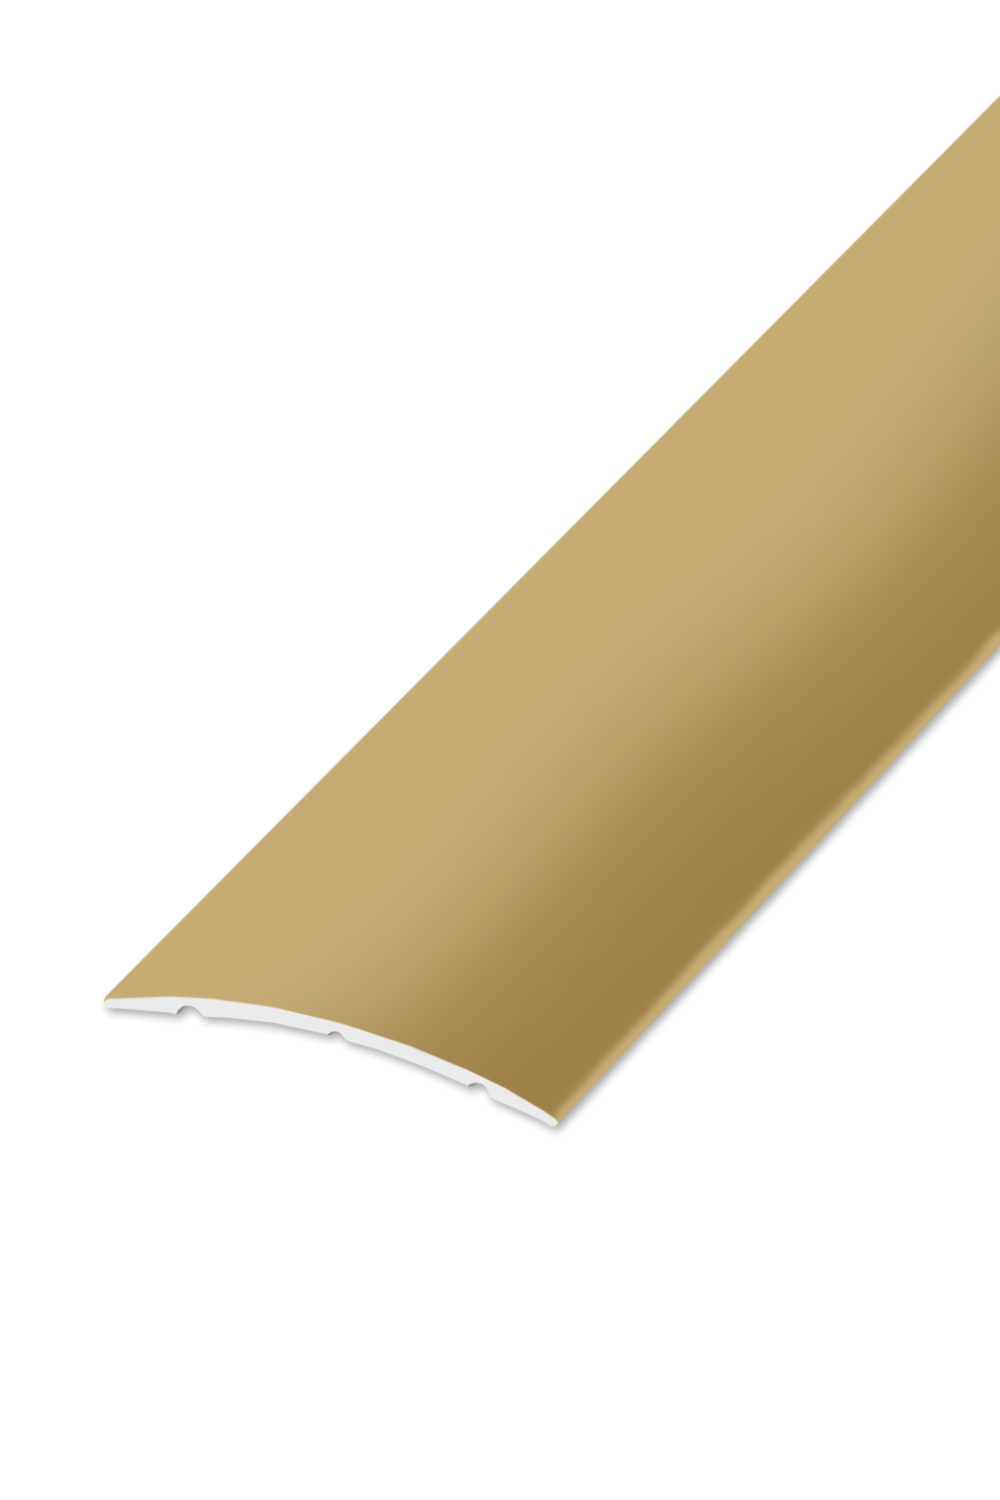 Přechodová lišta STANDARD 40 - Zlatá 90 cm